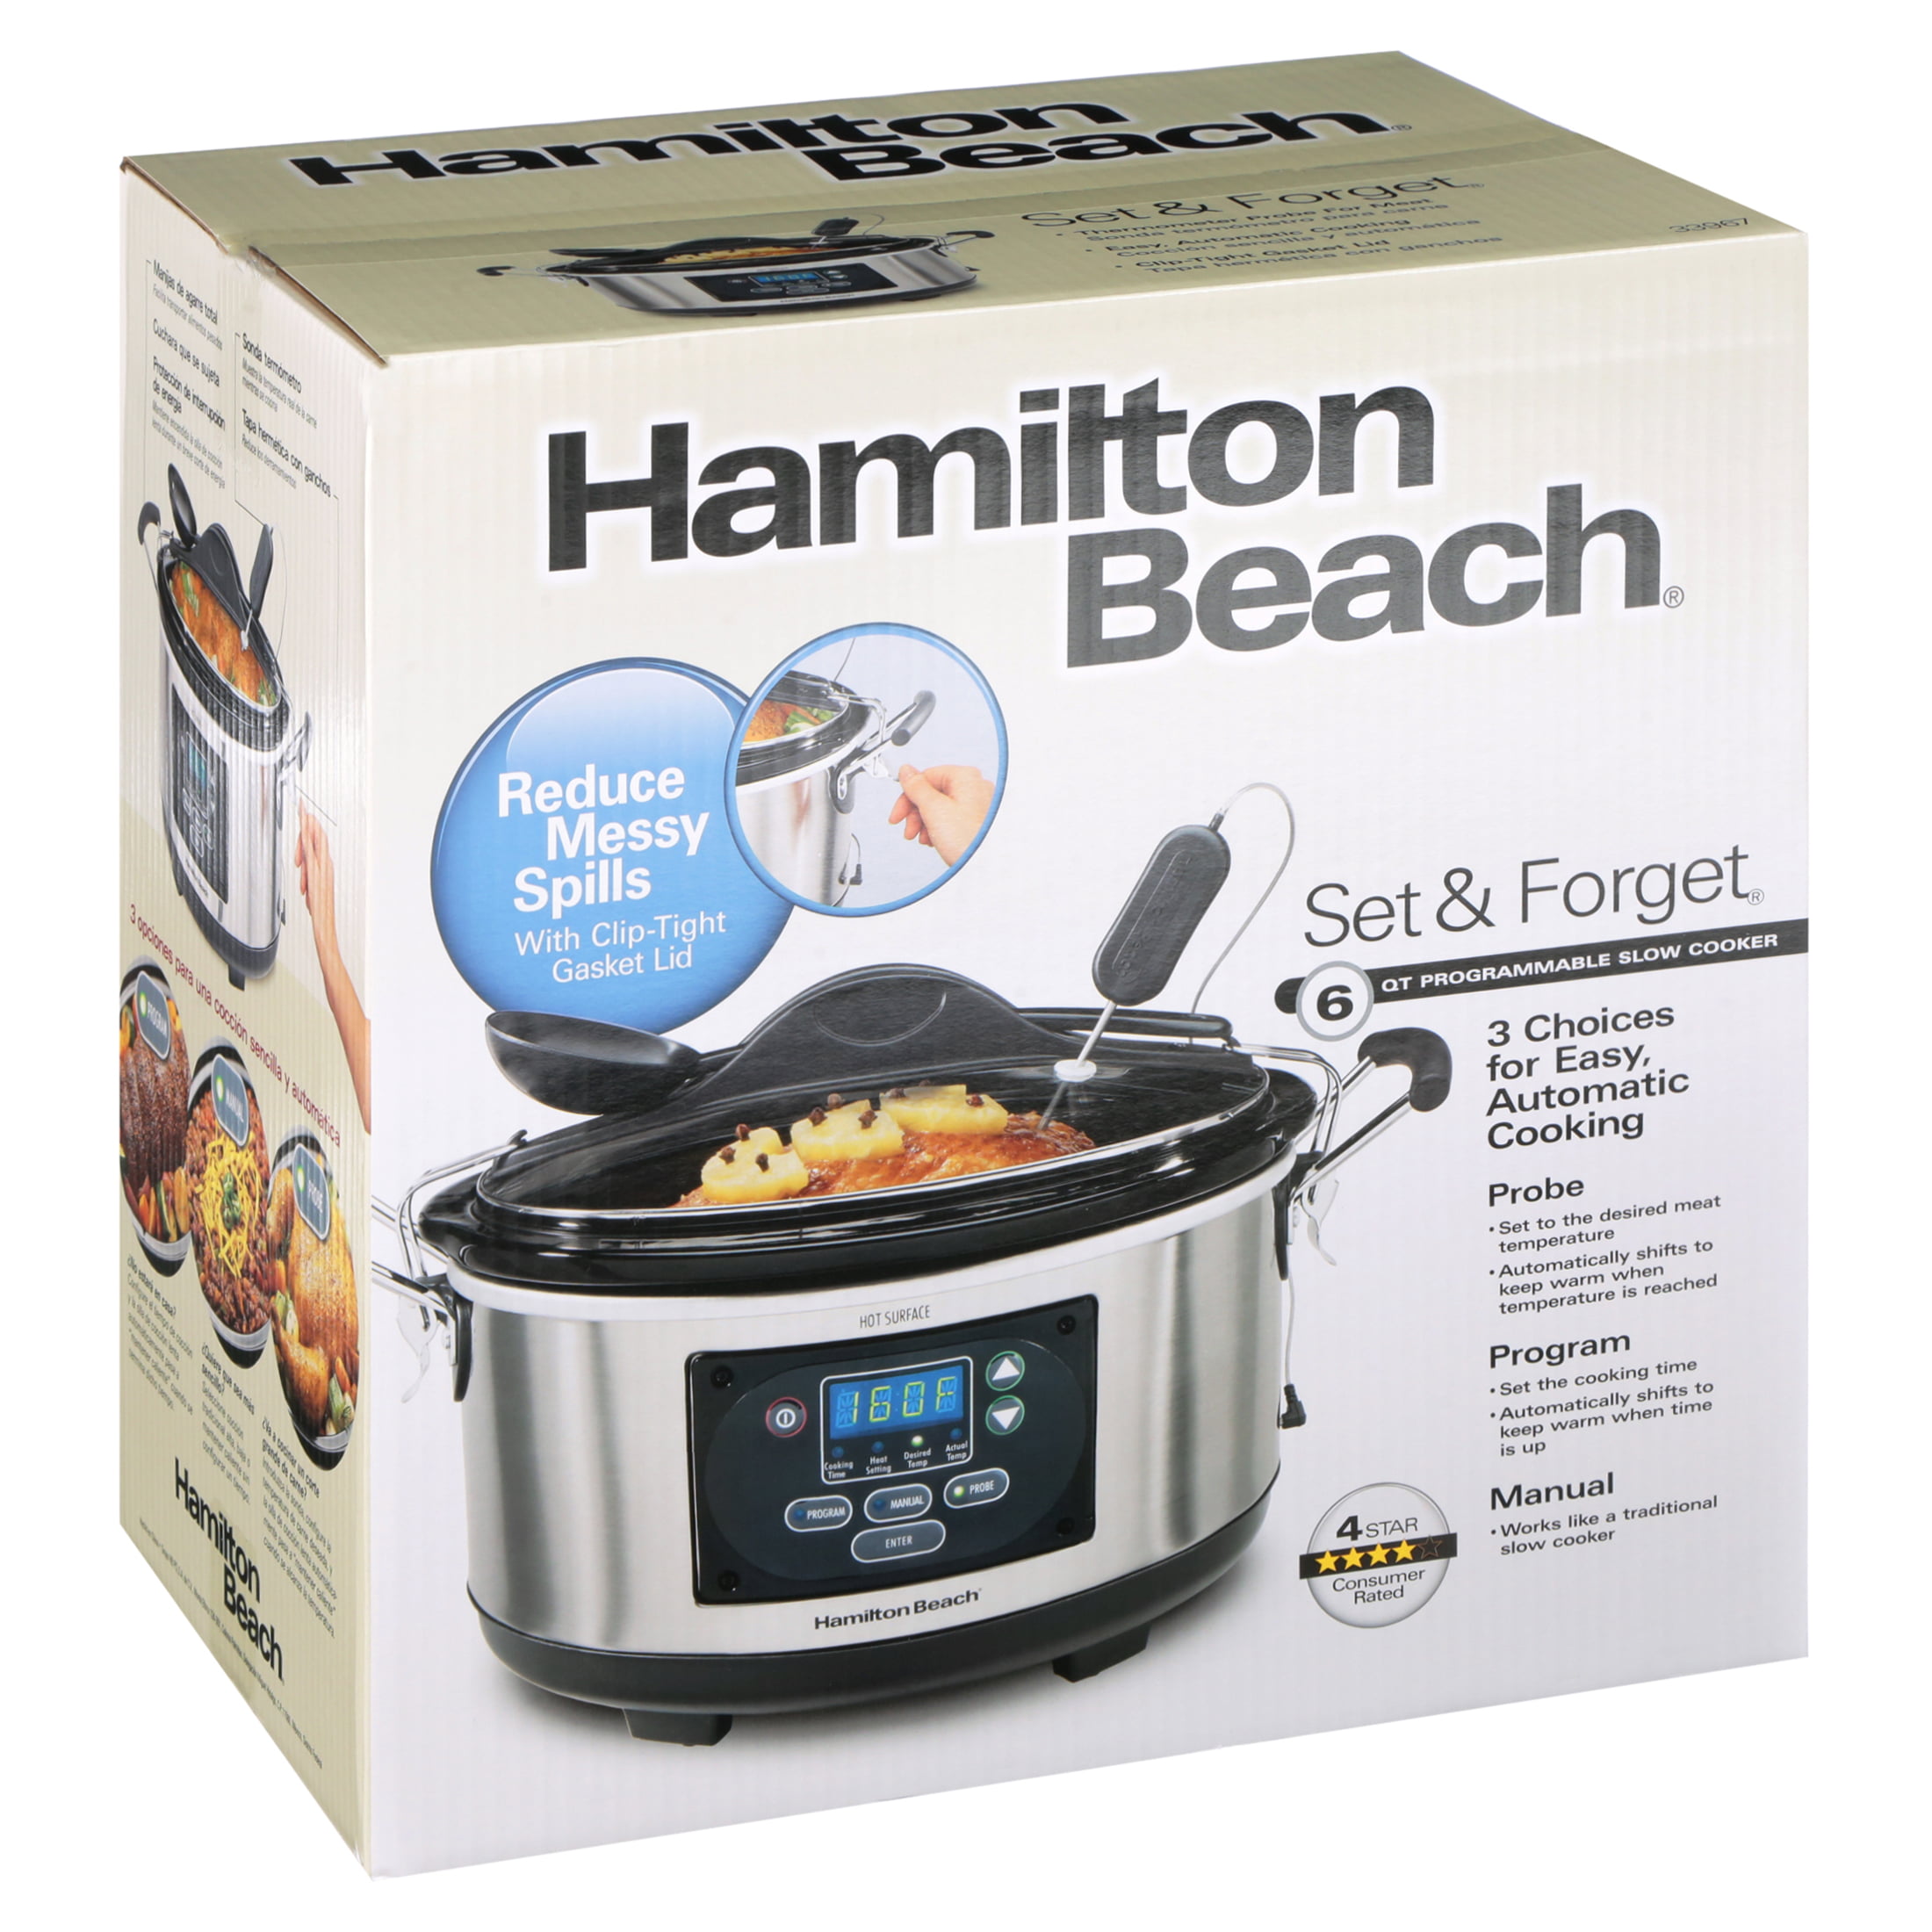 Hamilton Beach Set & Forget®6 Qt. Programmable Slow Cooker